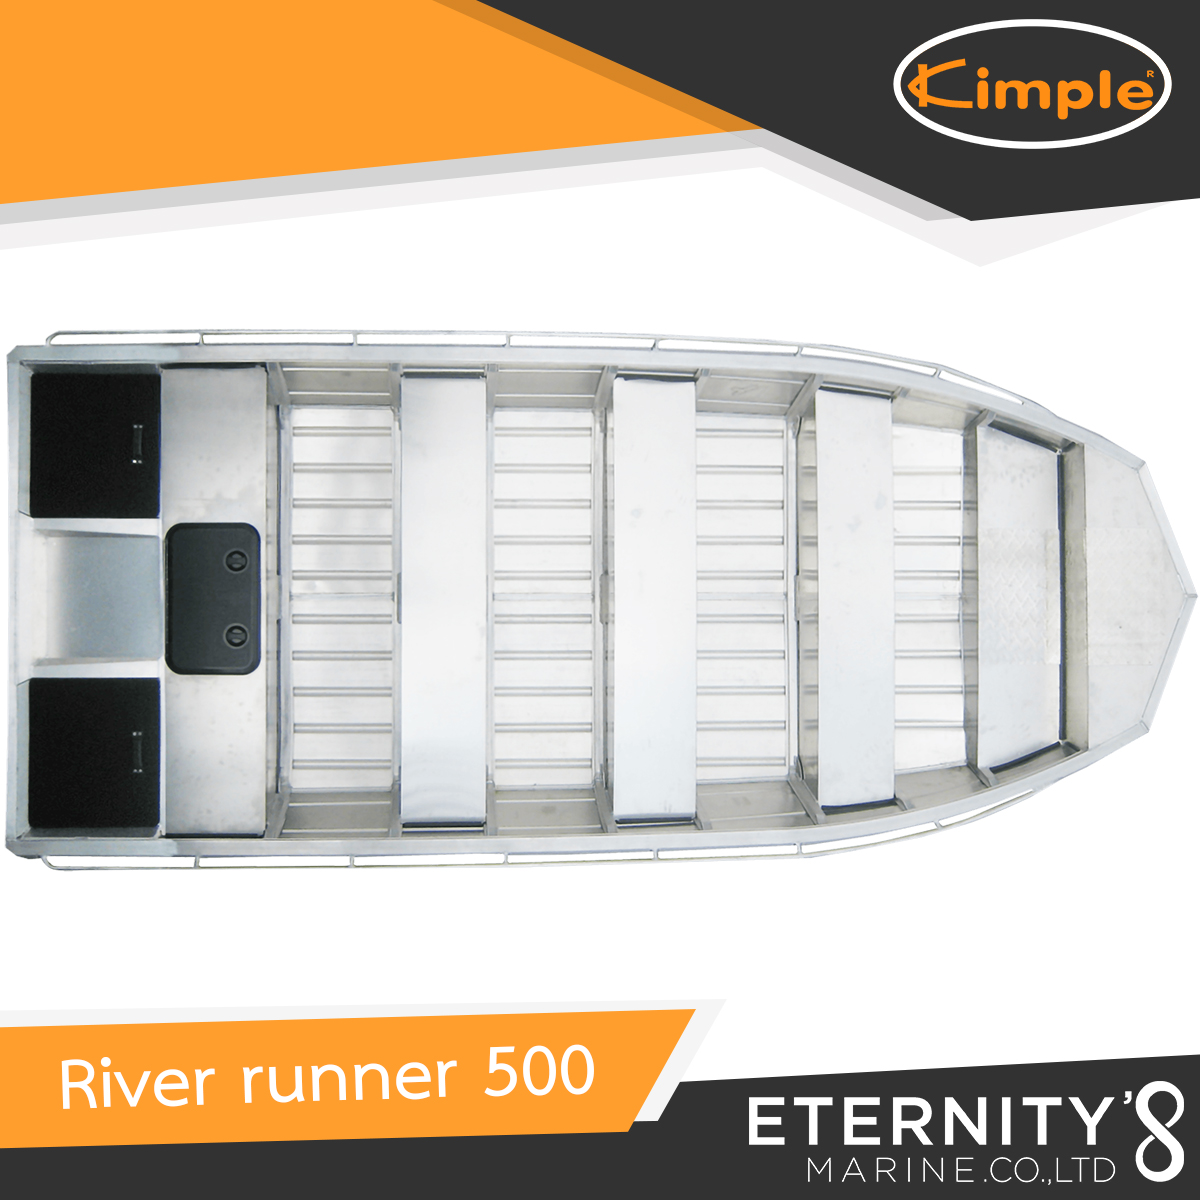 Kimple River Runner 500